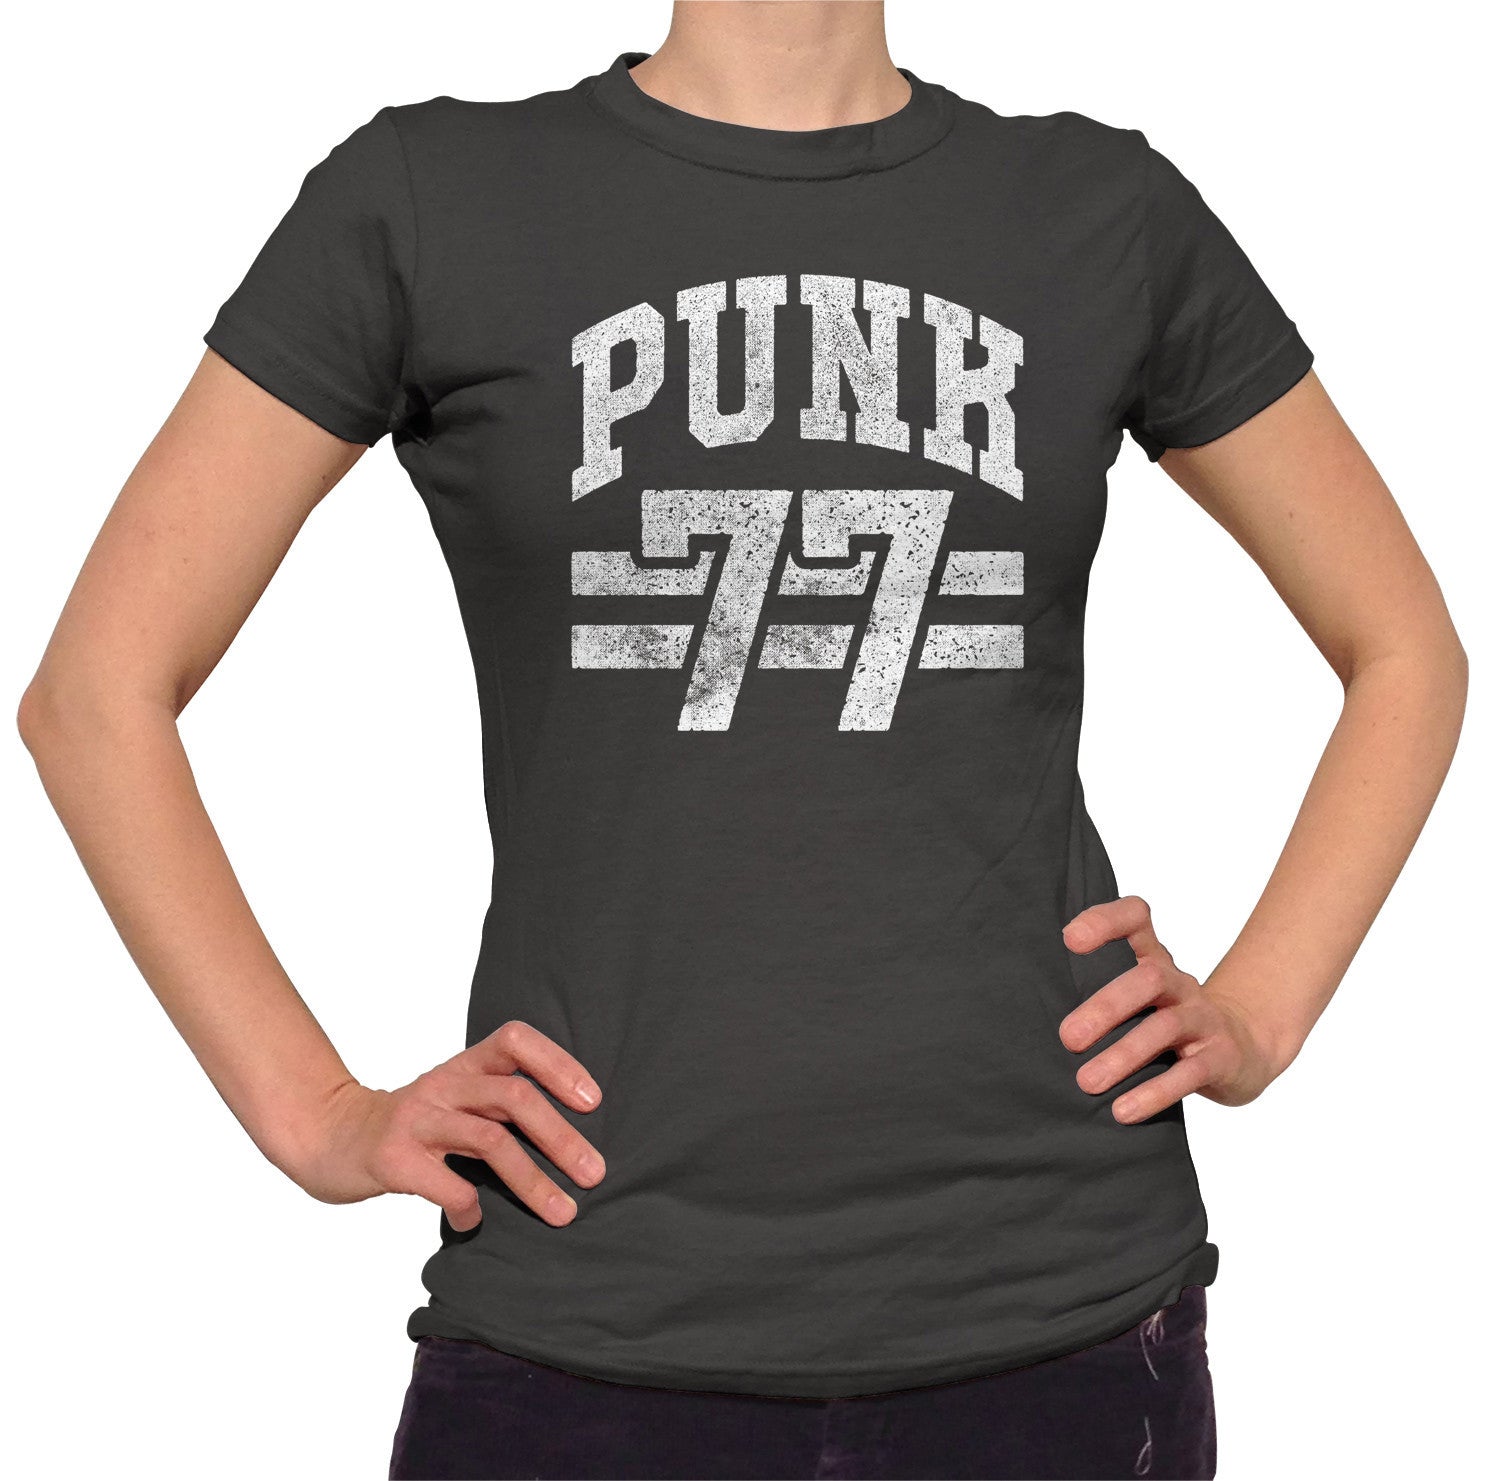 Women's 77 T-Shirt - Alternative Music Punk Rock Grunge - Boredwalk